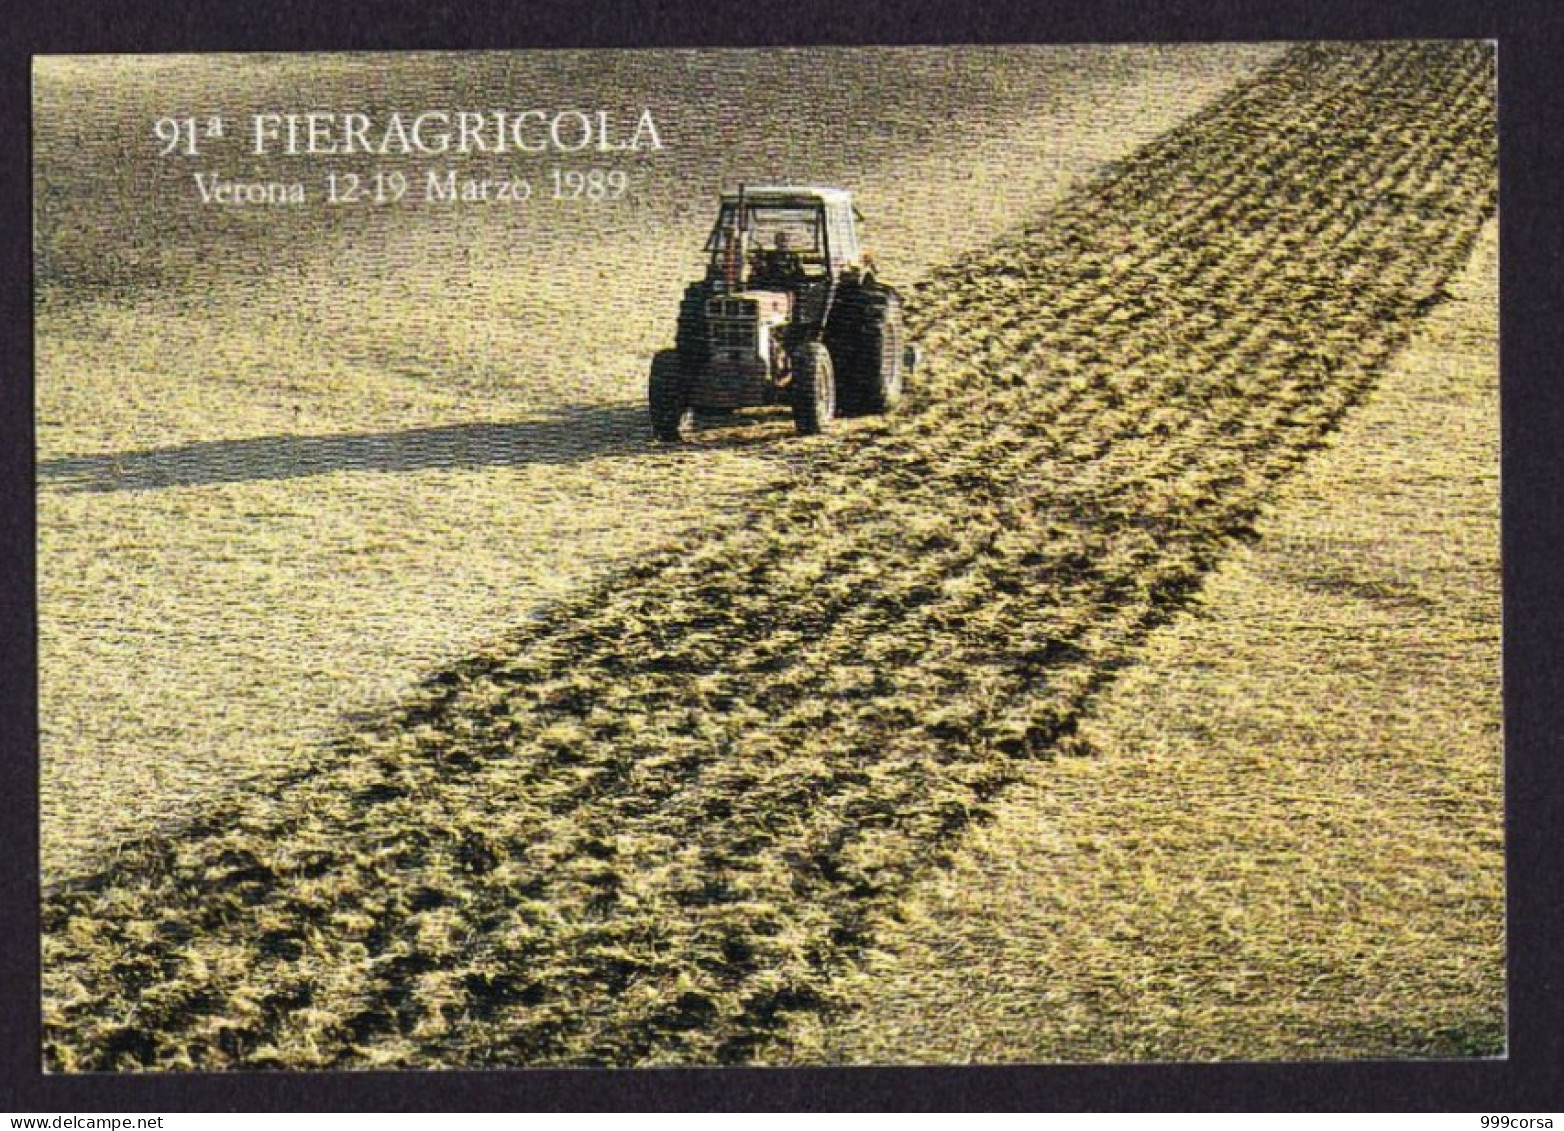 Italia, Agricoltura, 91^ Fieragricola Verona, Annullo Speciale Verona 12-3-1989 (2scan) - 1981-90: Marcophilia